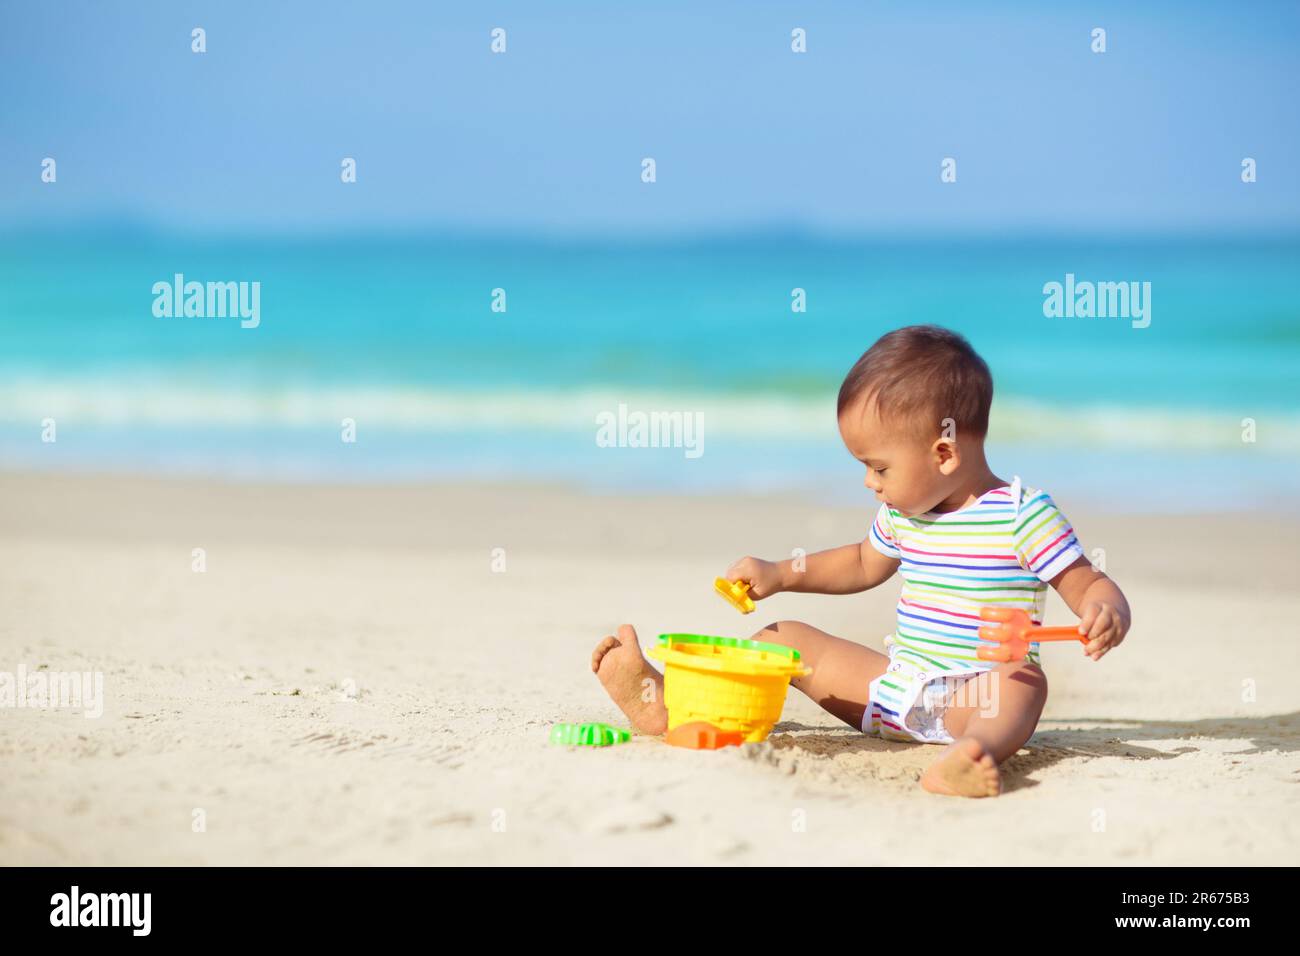 Bébé jouant sur la plage tropicale. Les enfants jouent en mer pendant les vacances d'été en famille. Jouets de sable et d'eau, protection solaire pour les jeunes enfants. Banque D'Images